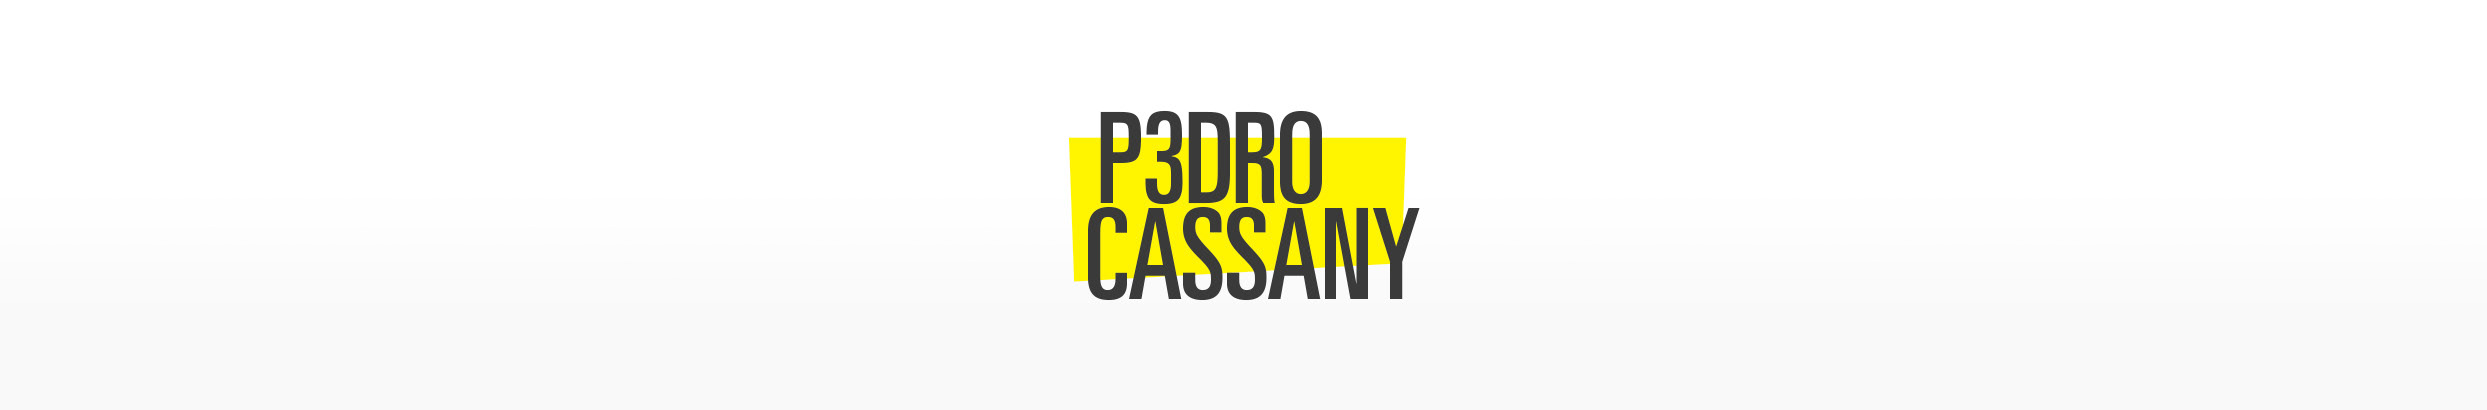 Pedro Cassany 的個人檔案橫幅